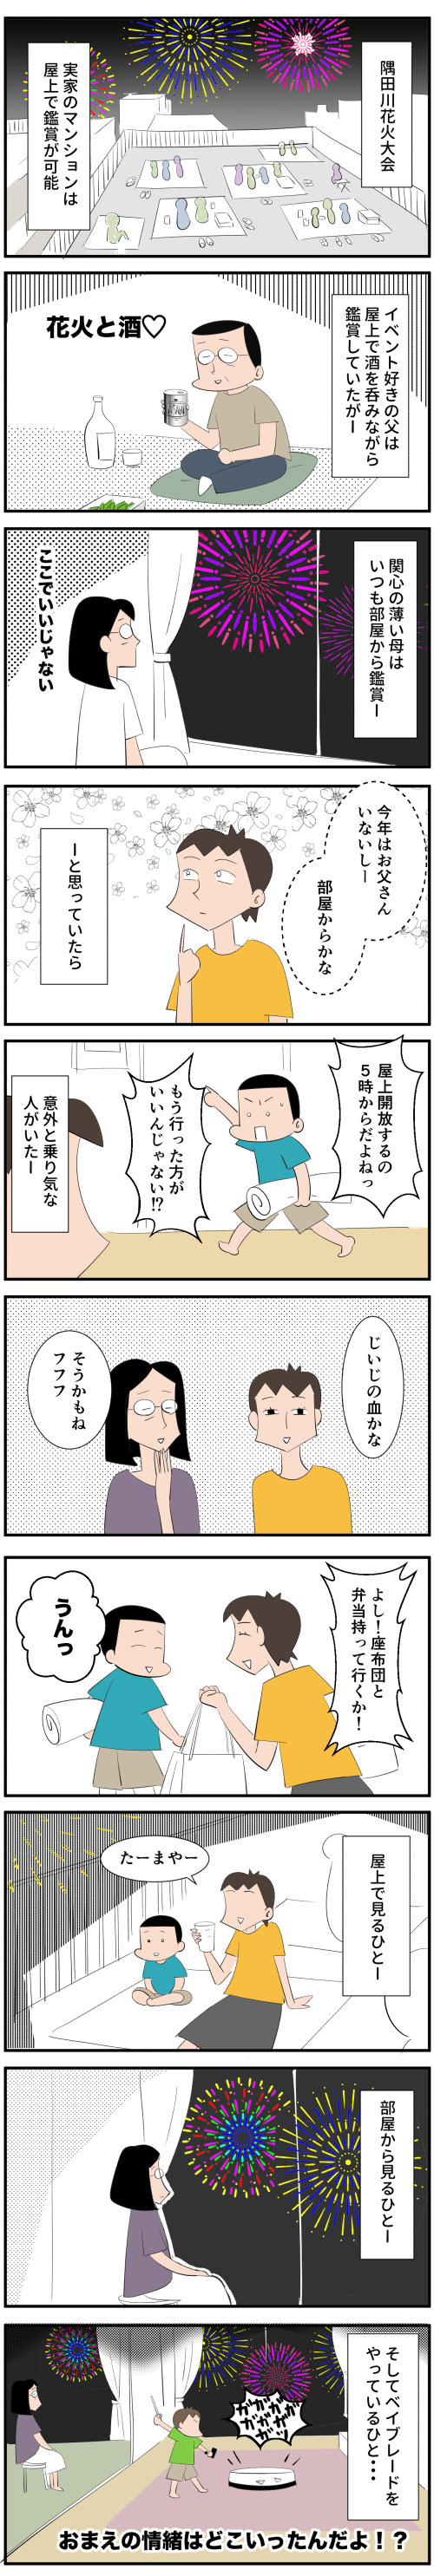 隅田川花火大会というタイトルの漫画